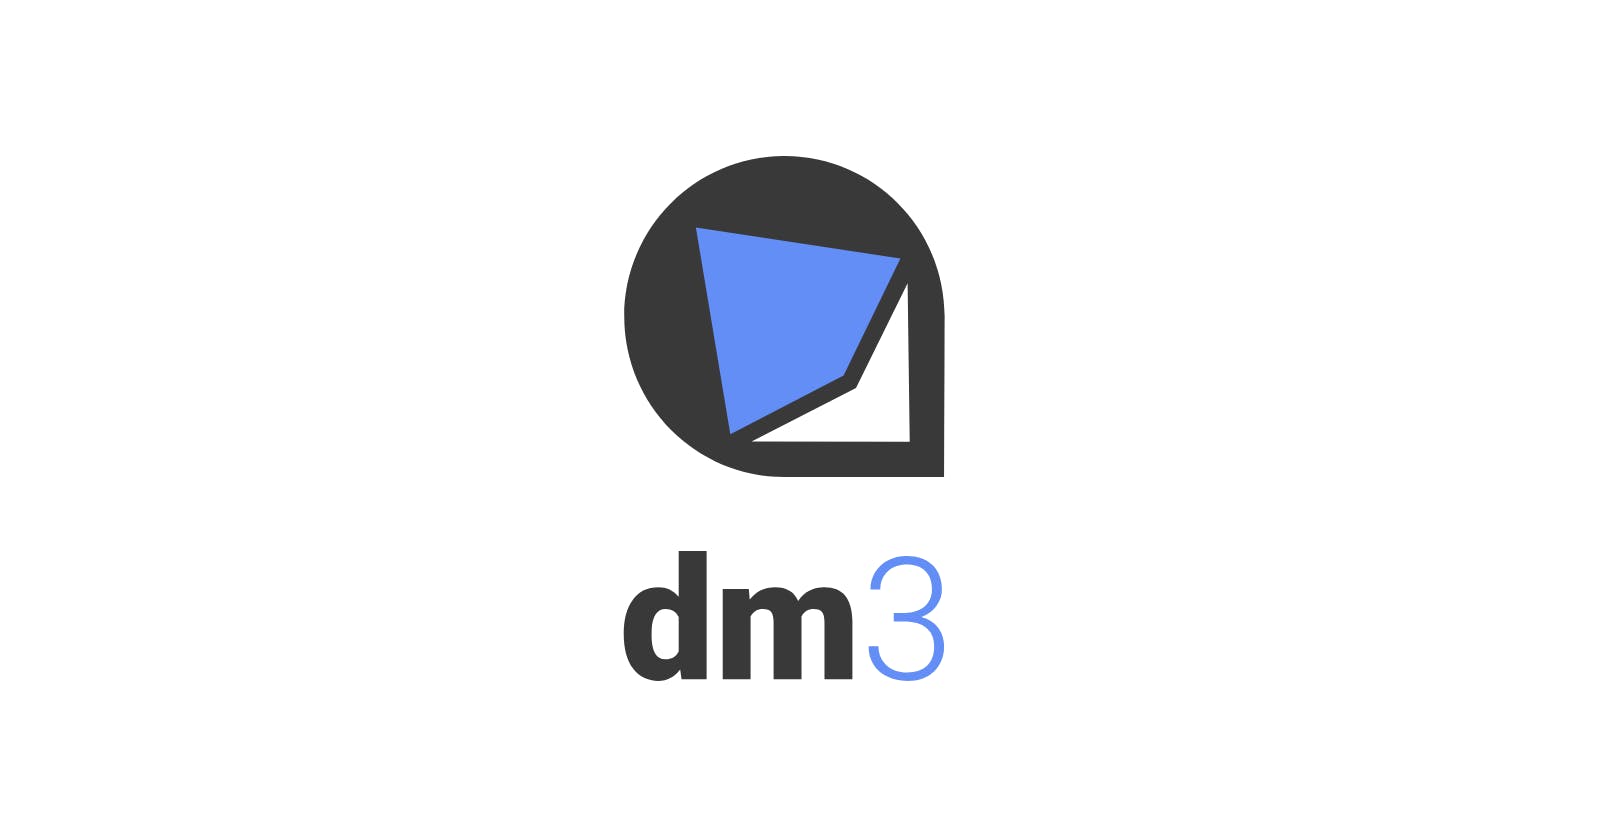 Dm3 Disassembled for Easier Understanding.